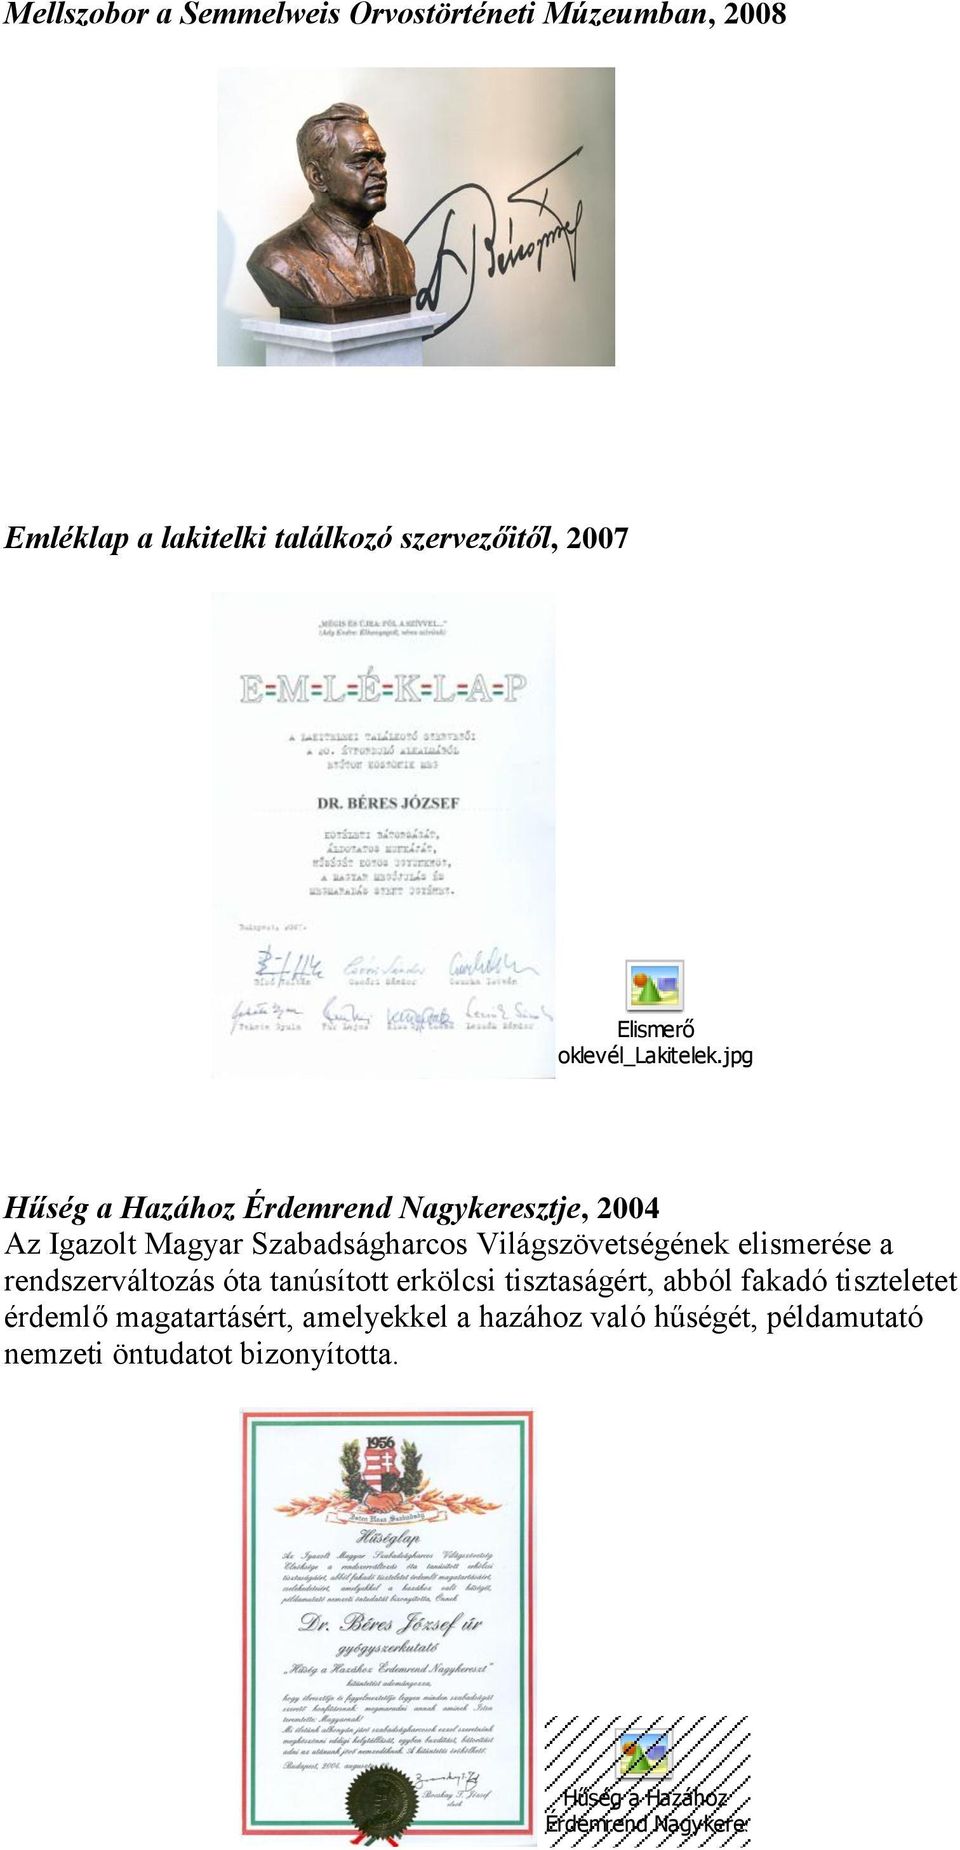 jpg Hűség a Hazához Érdemrend Nagykeresztje, 2004 Az Igazolt Magyar Szabadságharcos Világszövetségének elismerése a